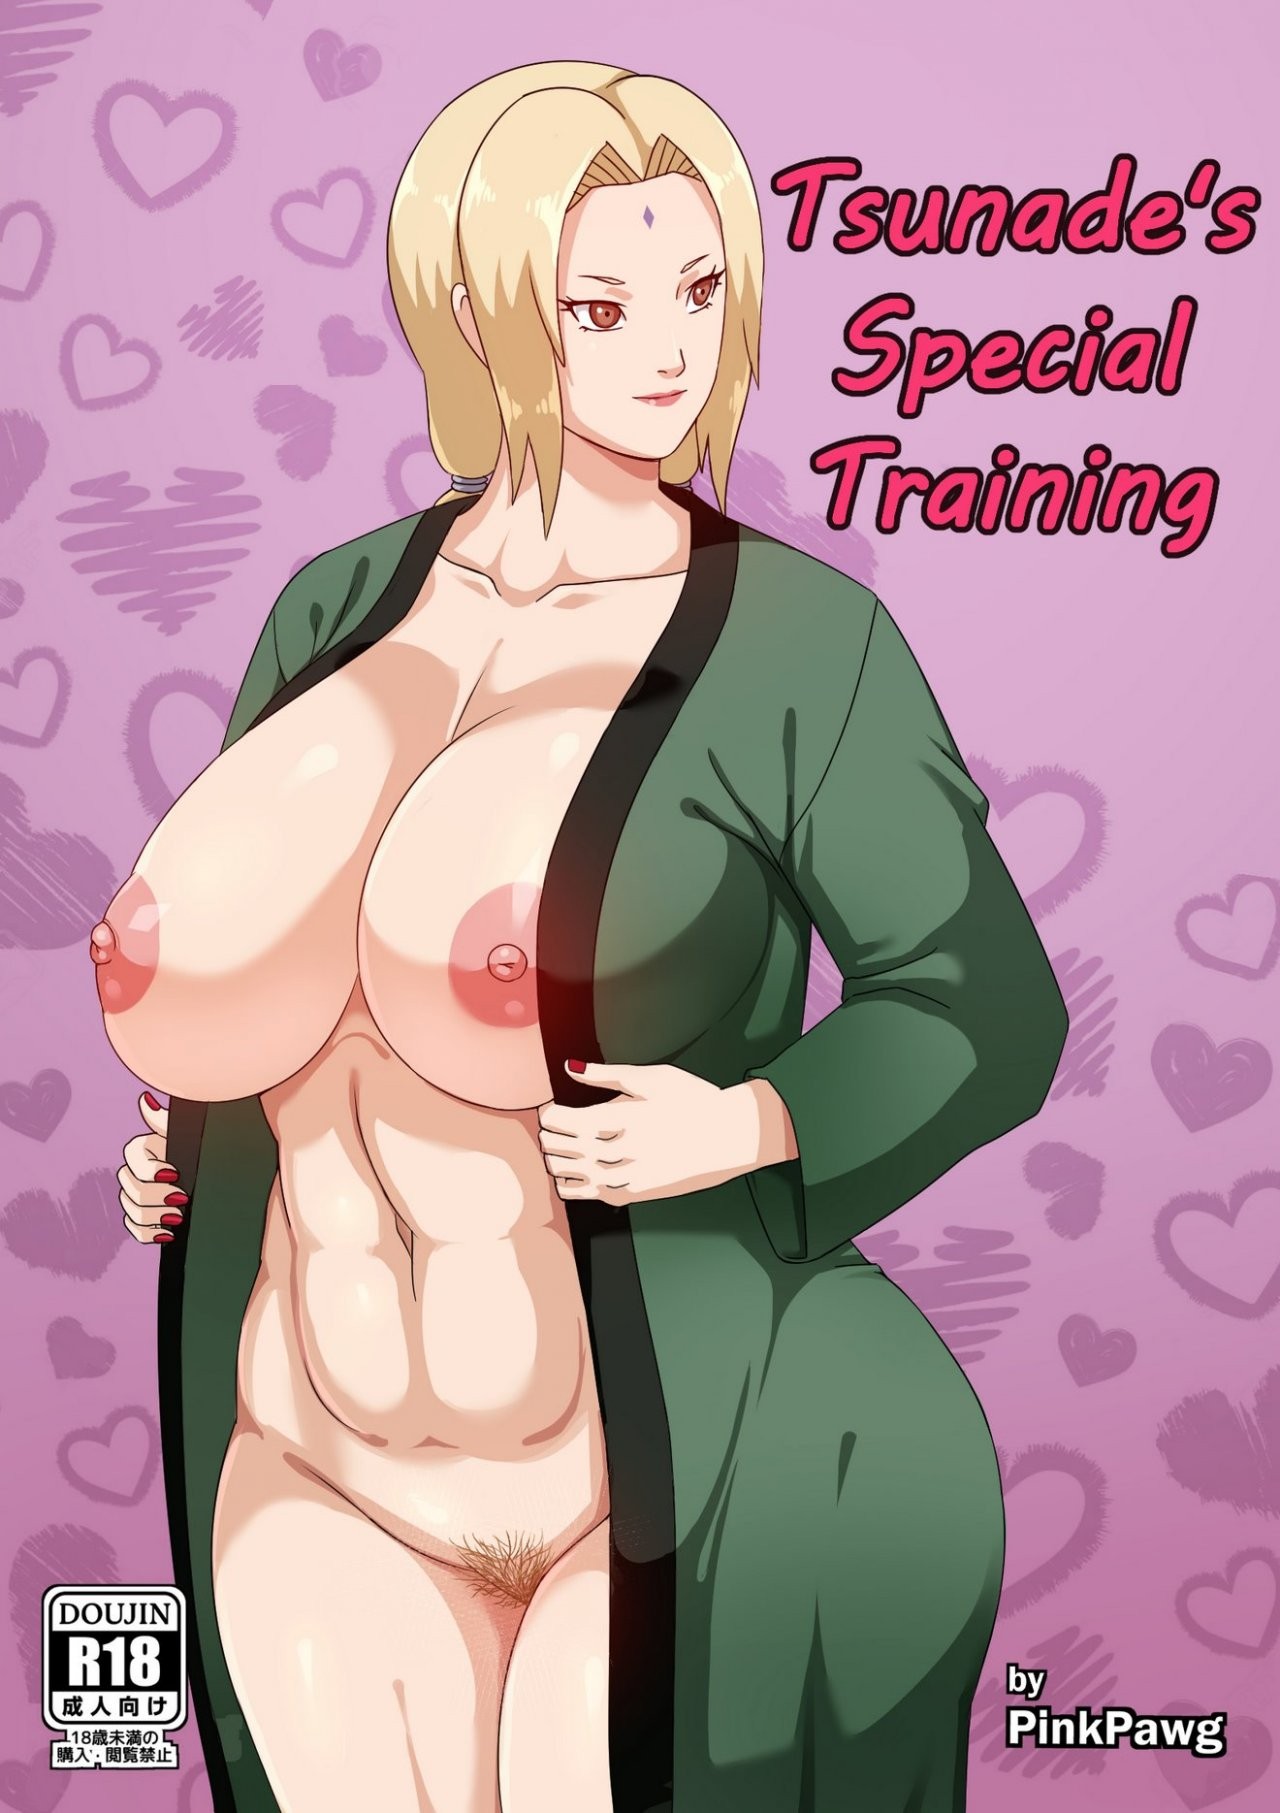 Tsunade’s Special Training